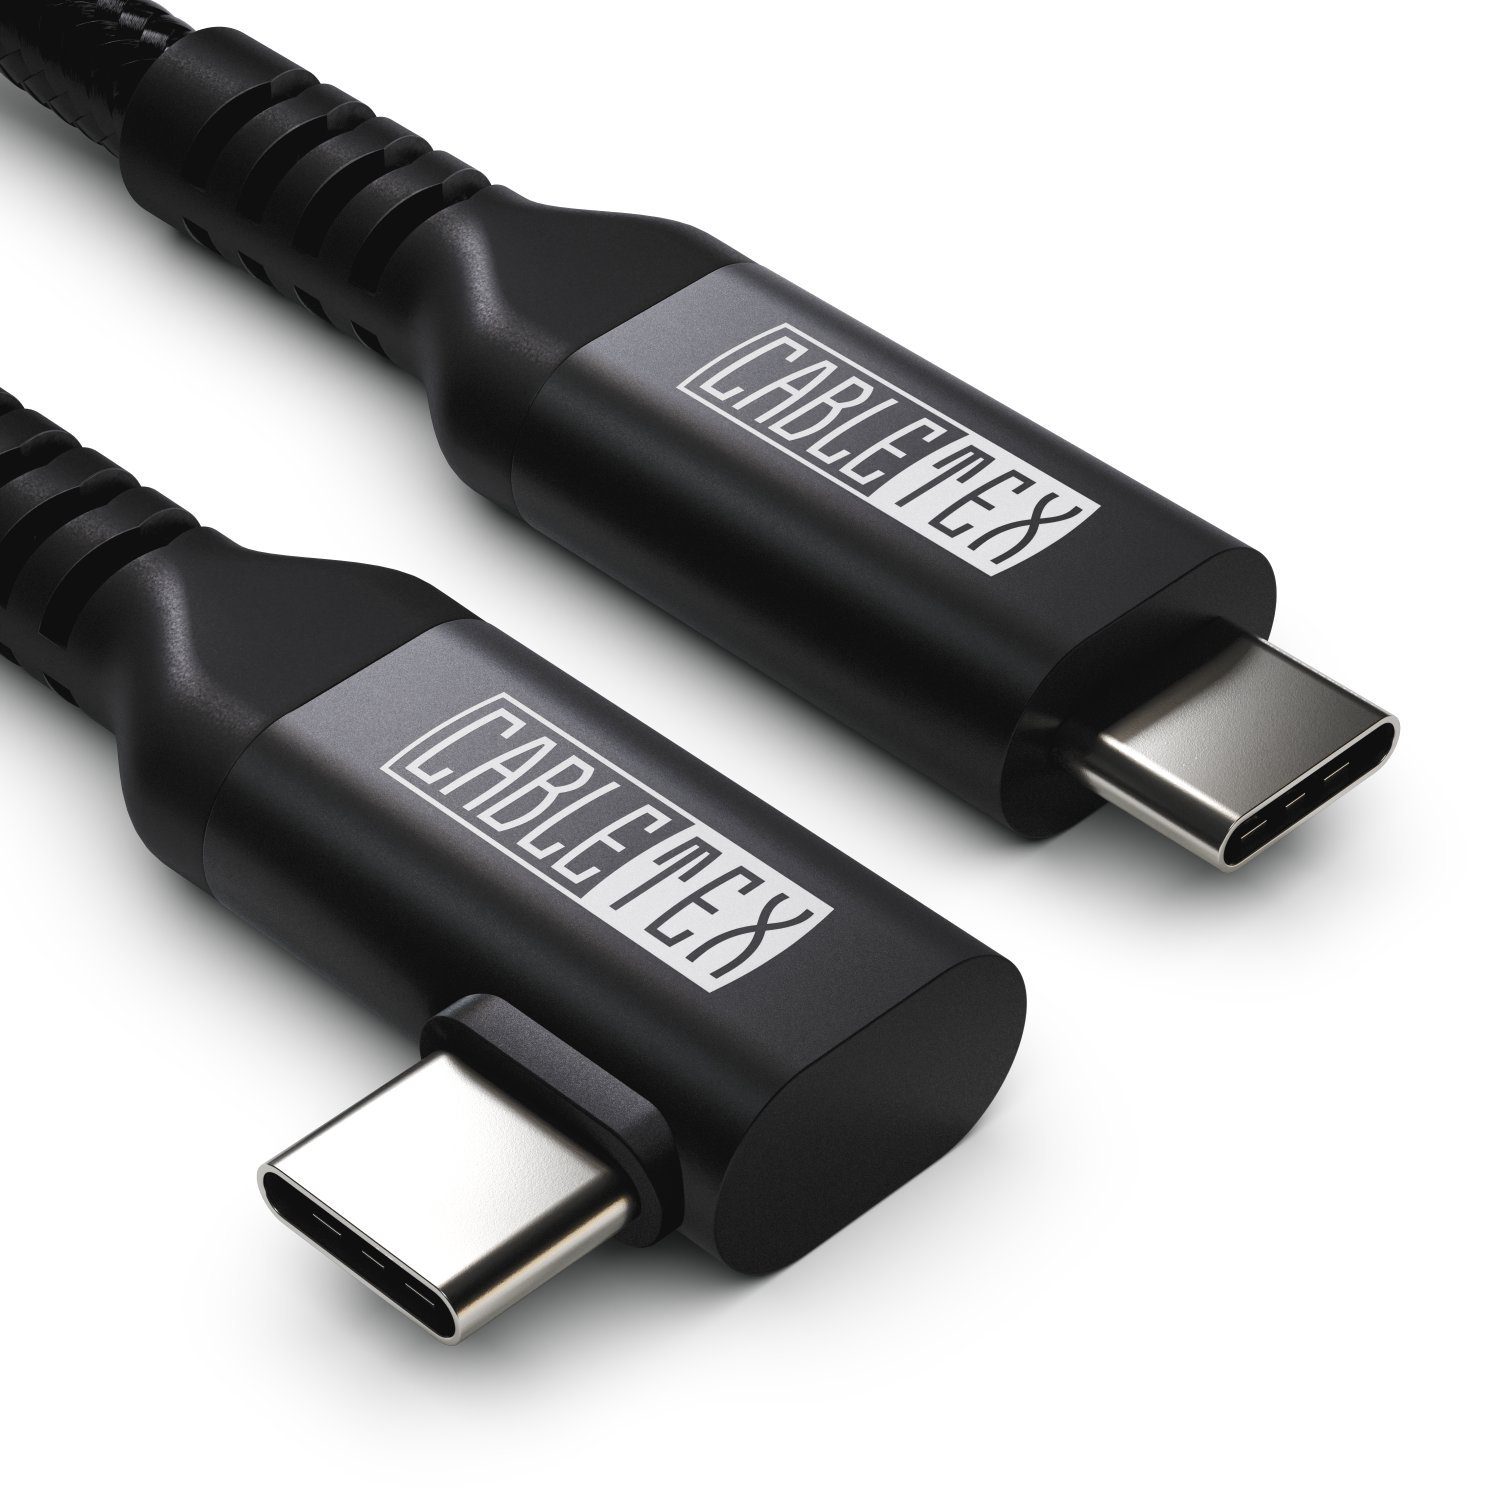 CABLETEX 5m USB-C Link Kabel für Meta Oculus Quest 3 & 2, Laden & Spielen USB-Kabel, USB C, USB-C, USB-C, USB C (500 cm), Robuster Nylonmantel, 5 Gbit/s, USB 3.2 Gen1, Gleichzeitig Aufladen